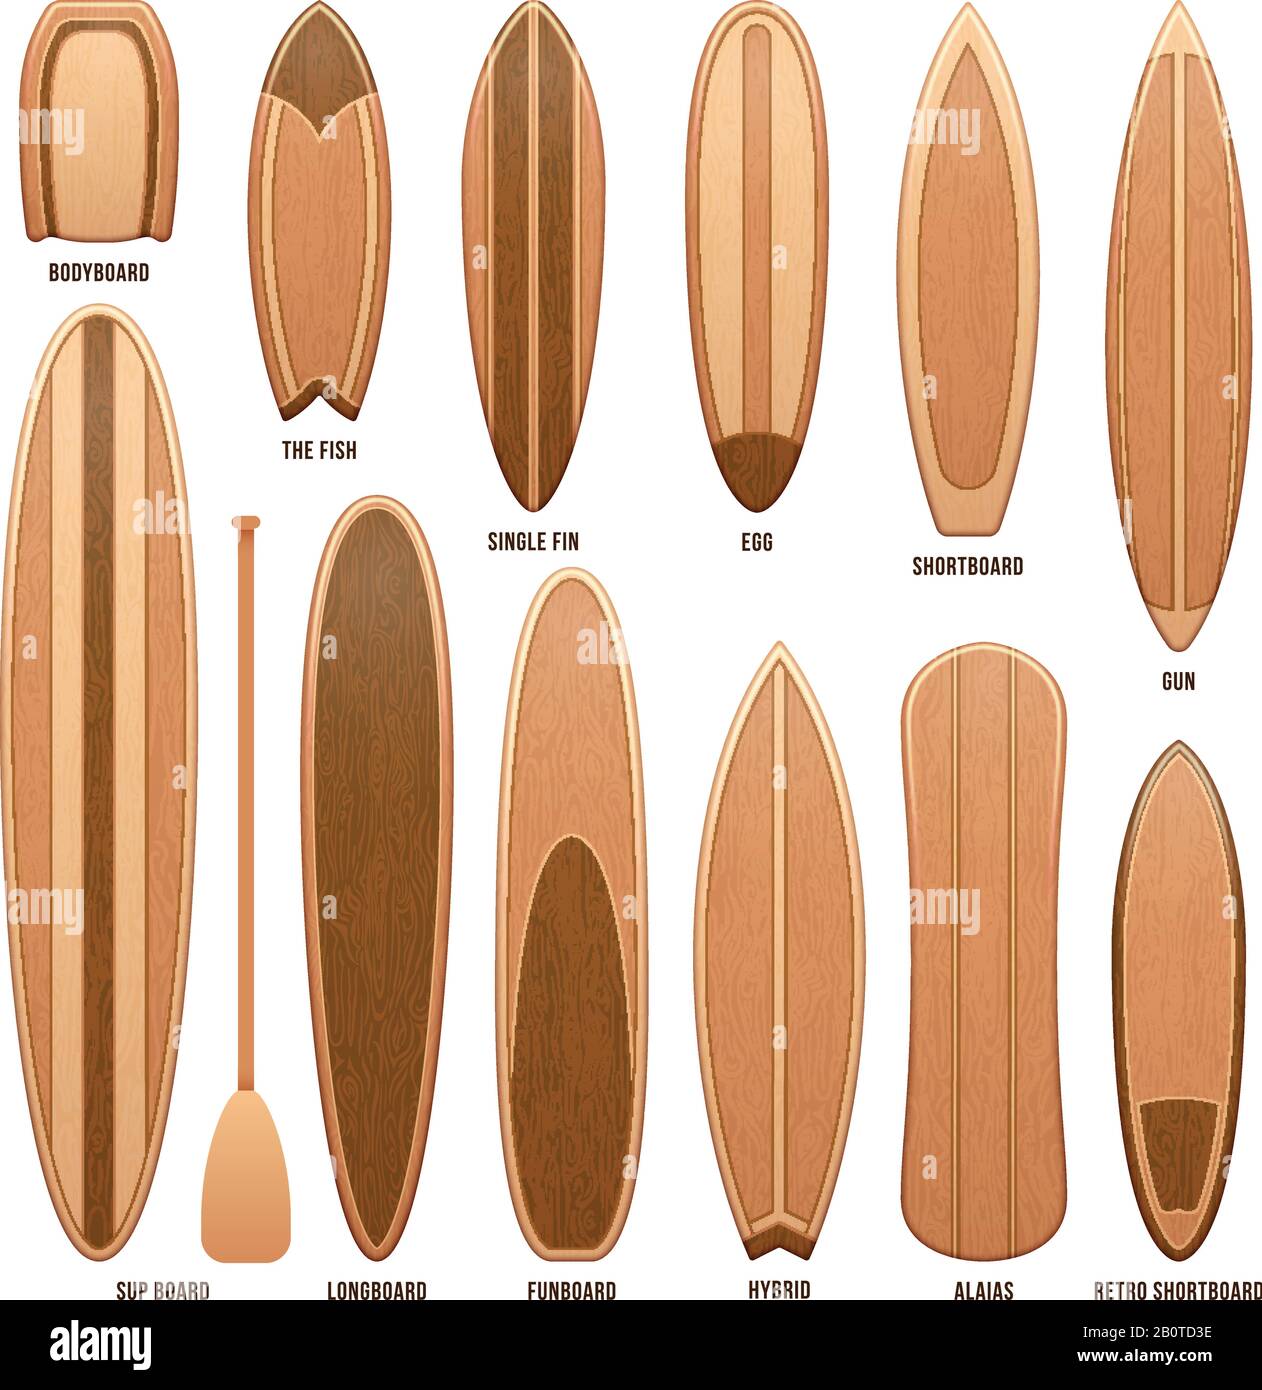 Auf weißen Vektorgrafiken isolierte Holz-Surfboards. Surfboad aus Holz für Sport, Surfbrett-Sammeldesign Stock Vektor